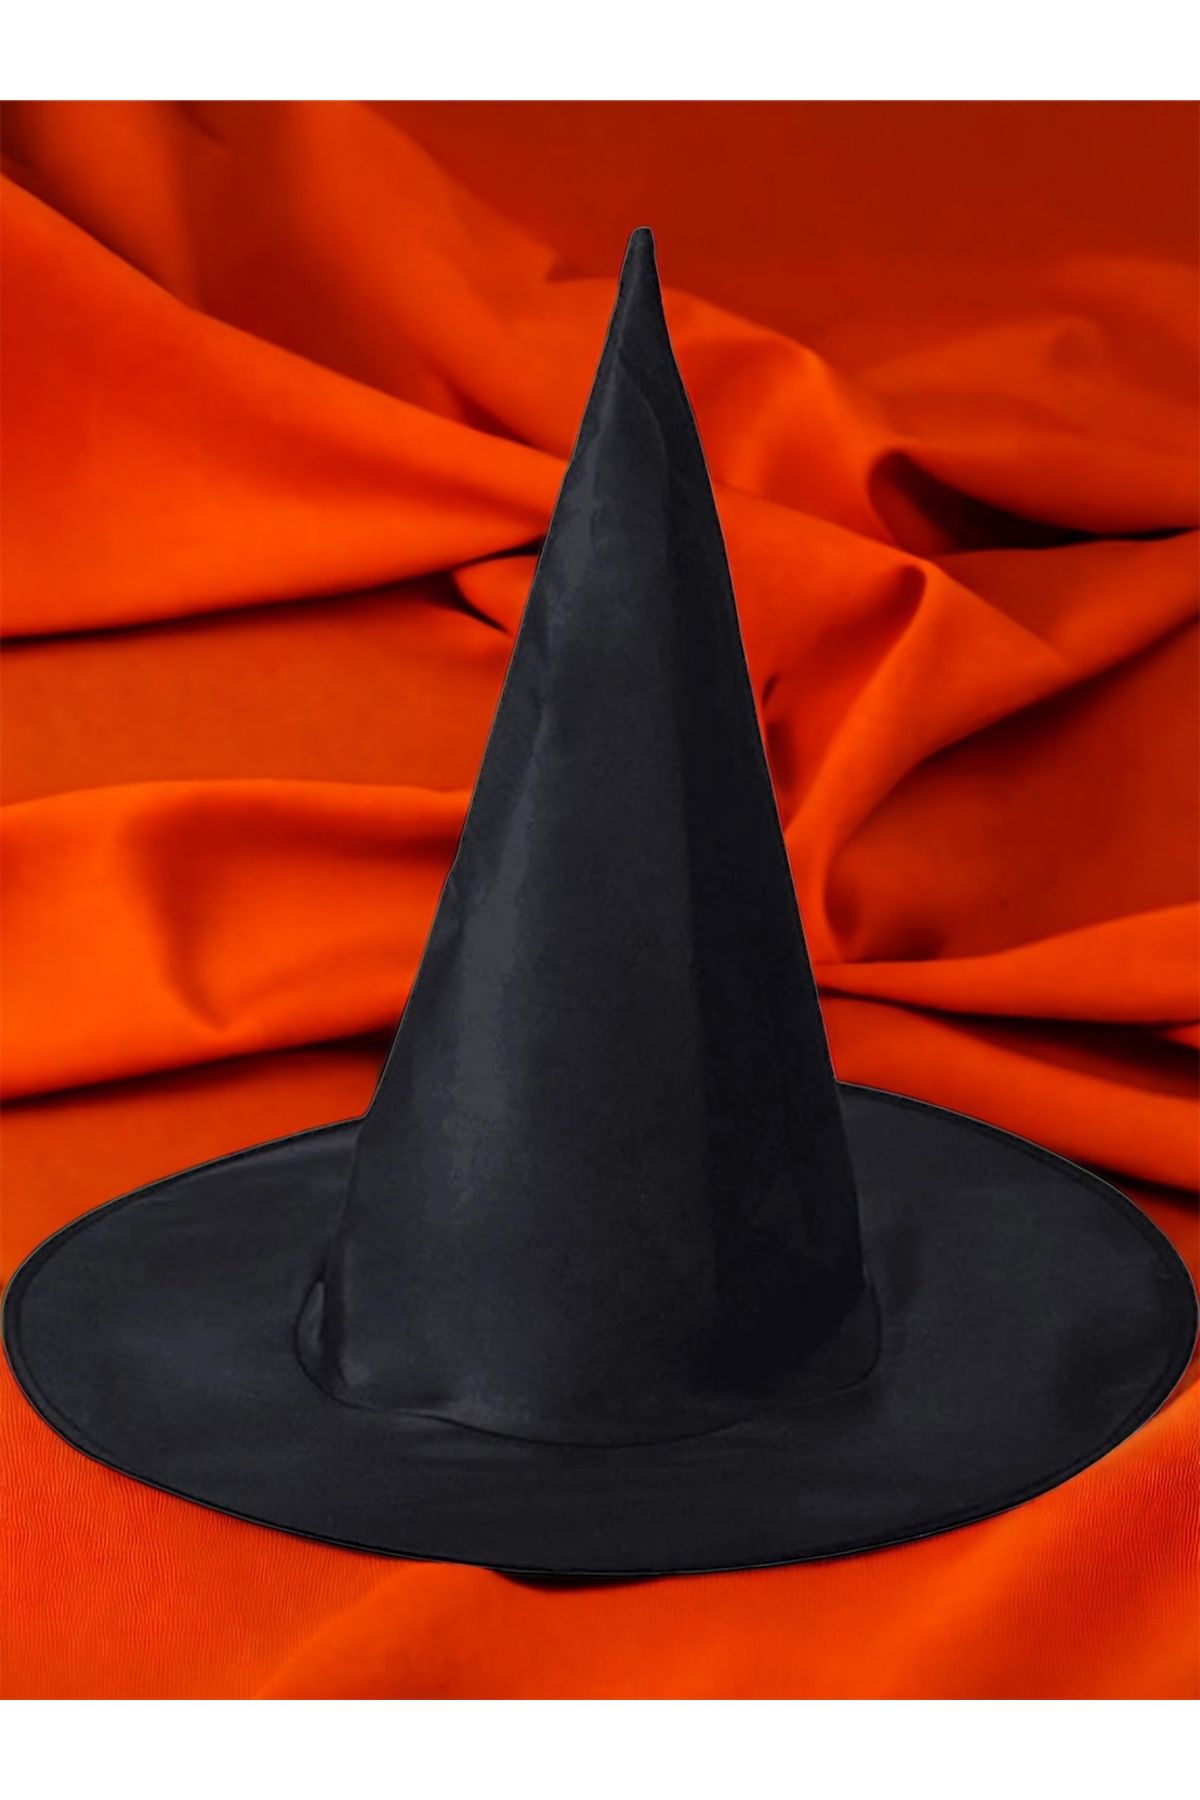 Happyland Halloween Siyah Cadı Şapkası Cadılar Bayramı Siyah Cadı Şapkası 1 Adet